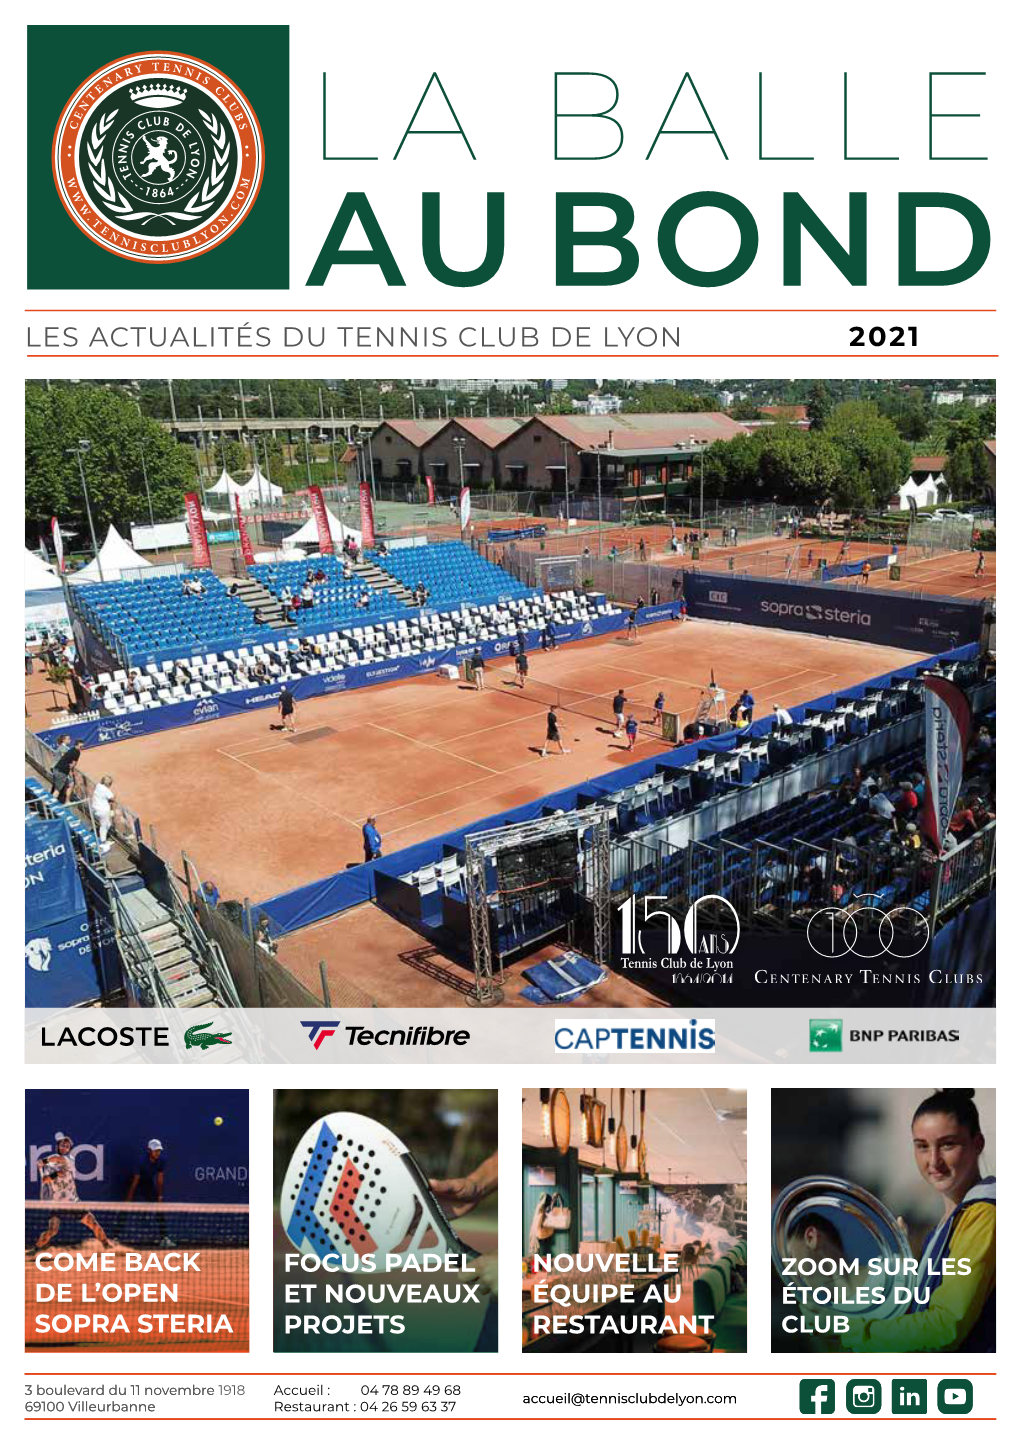 2021 Les Actualités Du Tennis Club De Lyon